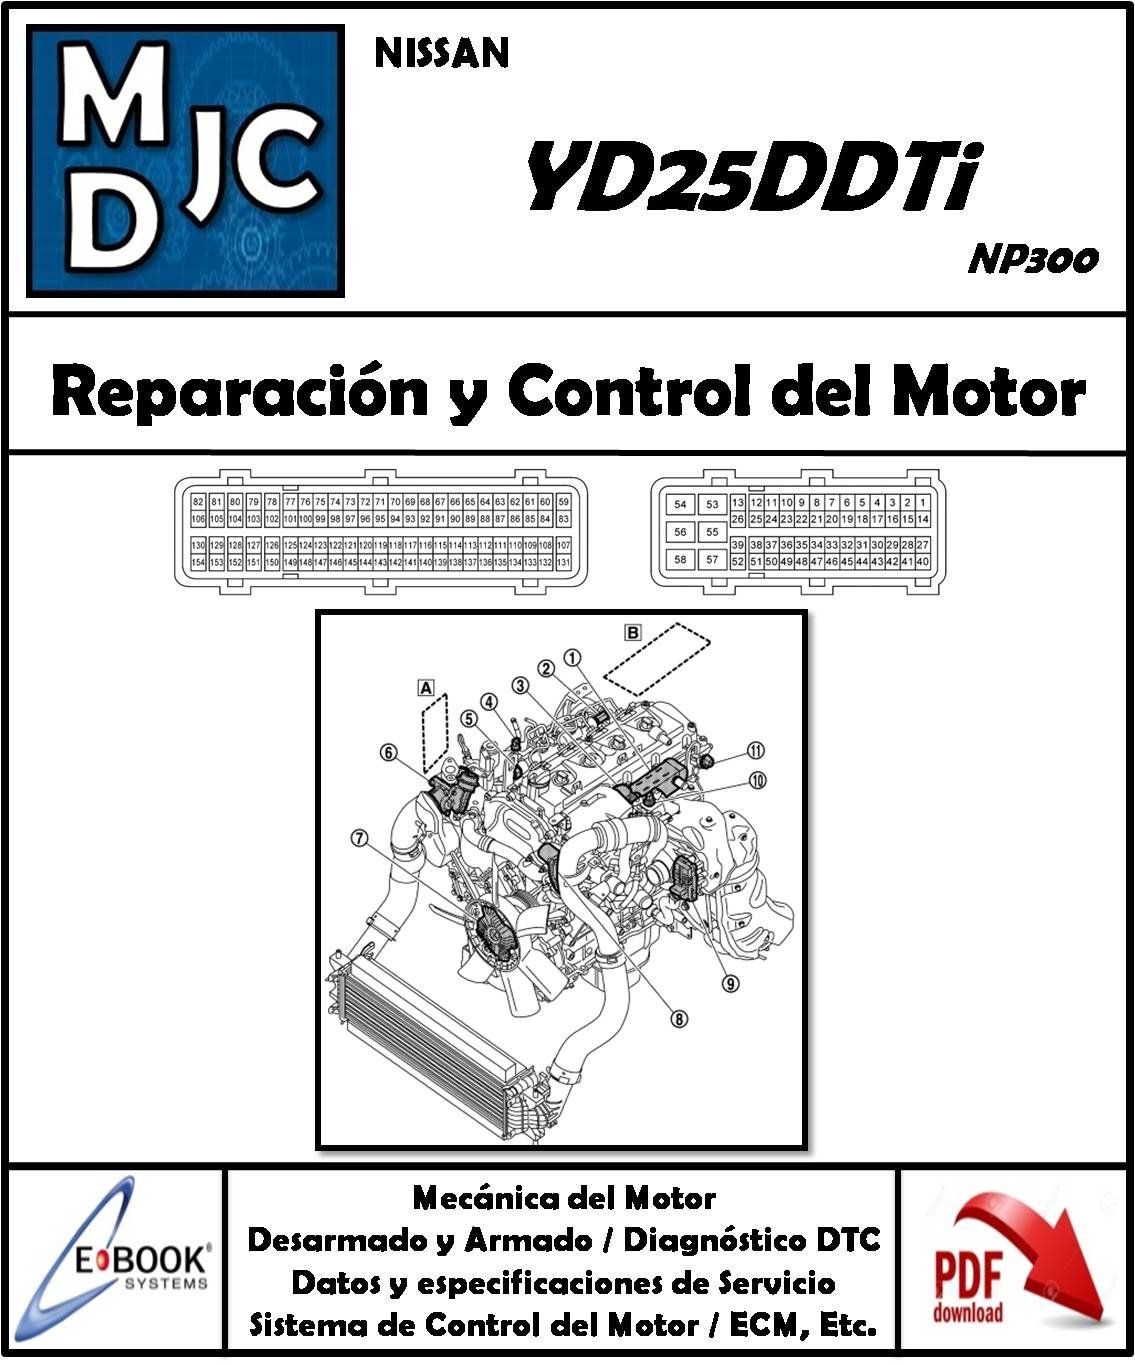 Nissan YD25DDTi / L4 DOHC (Diesel) 2.5 L (NP300 / D23)